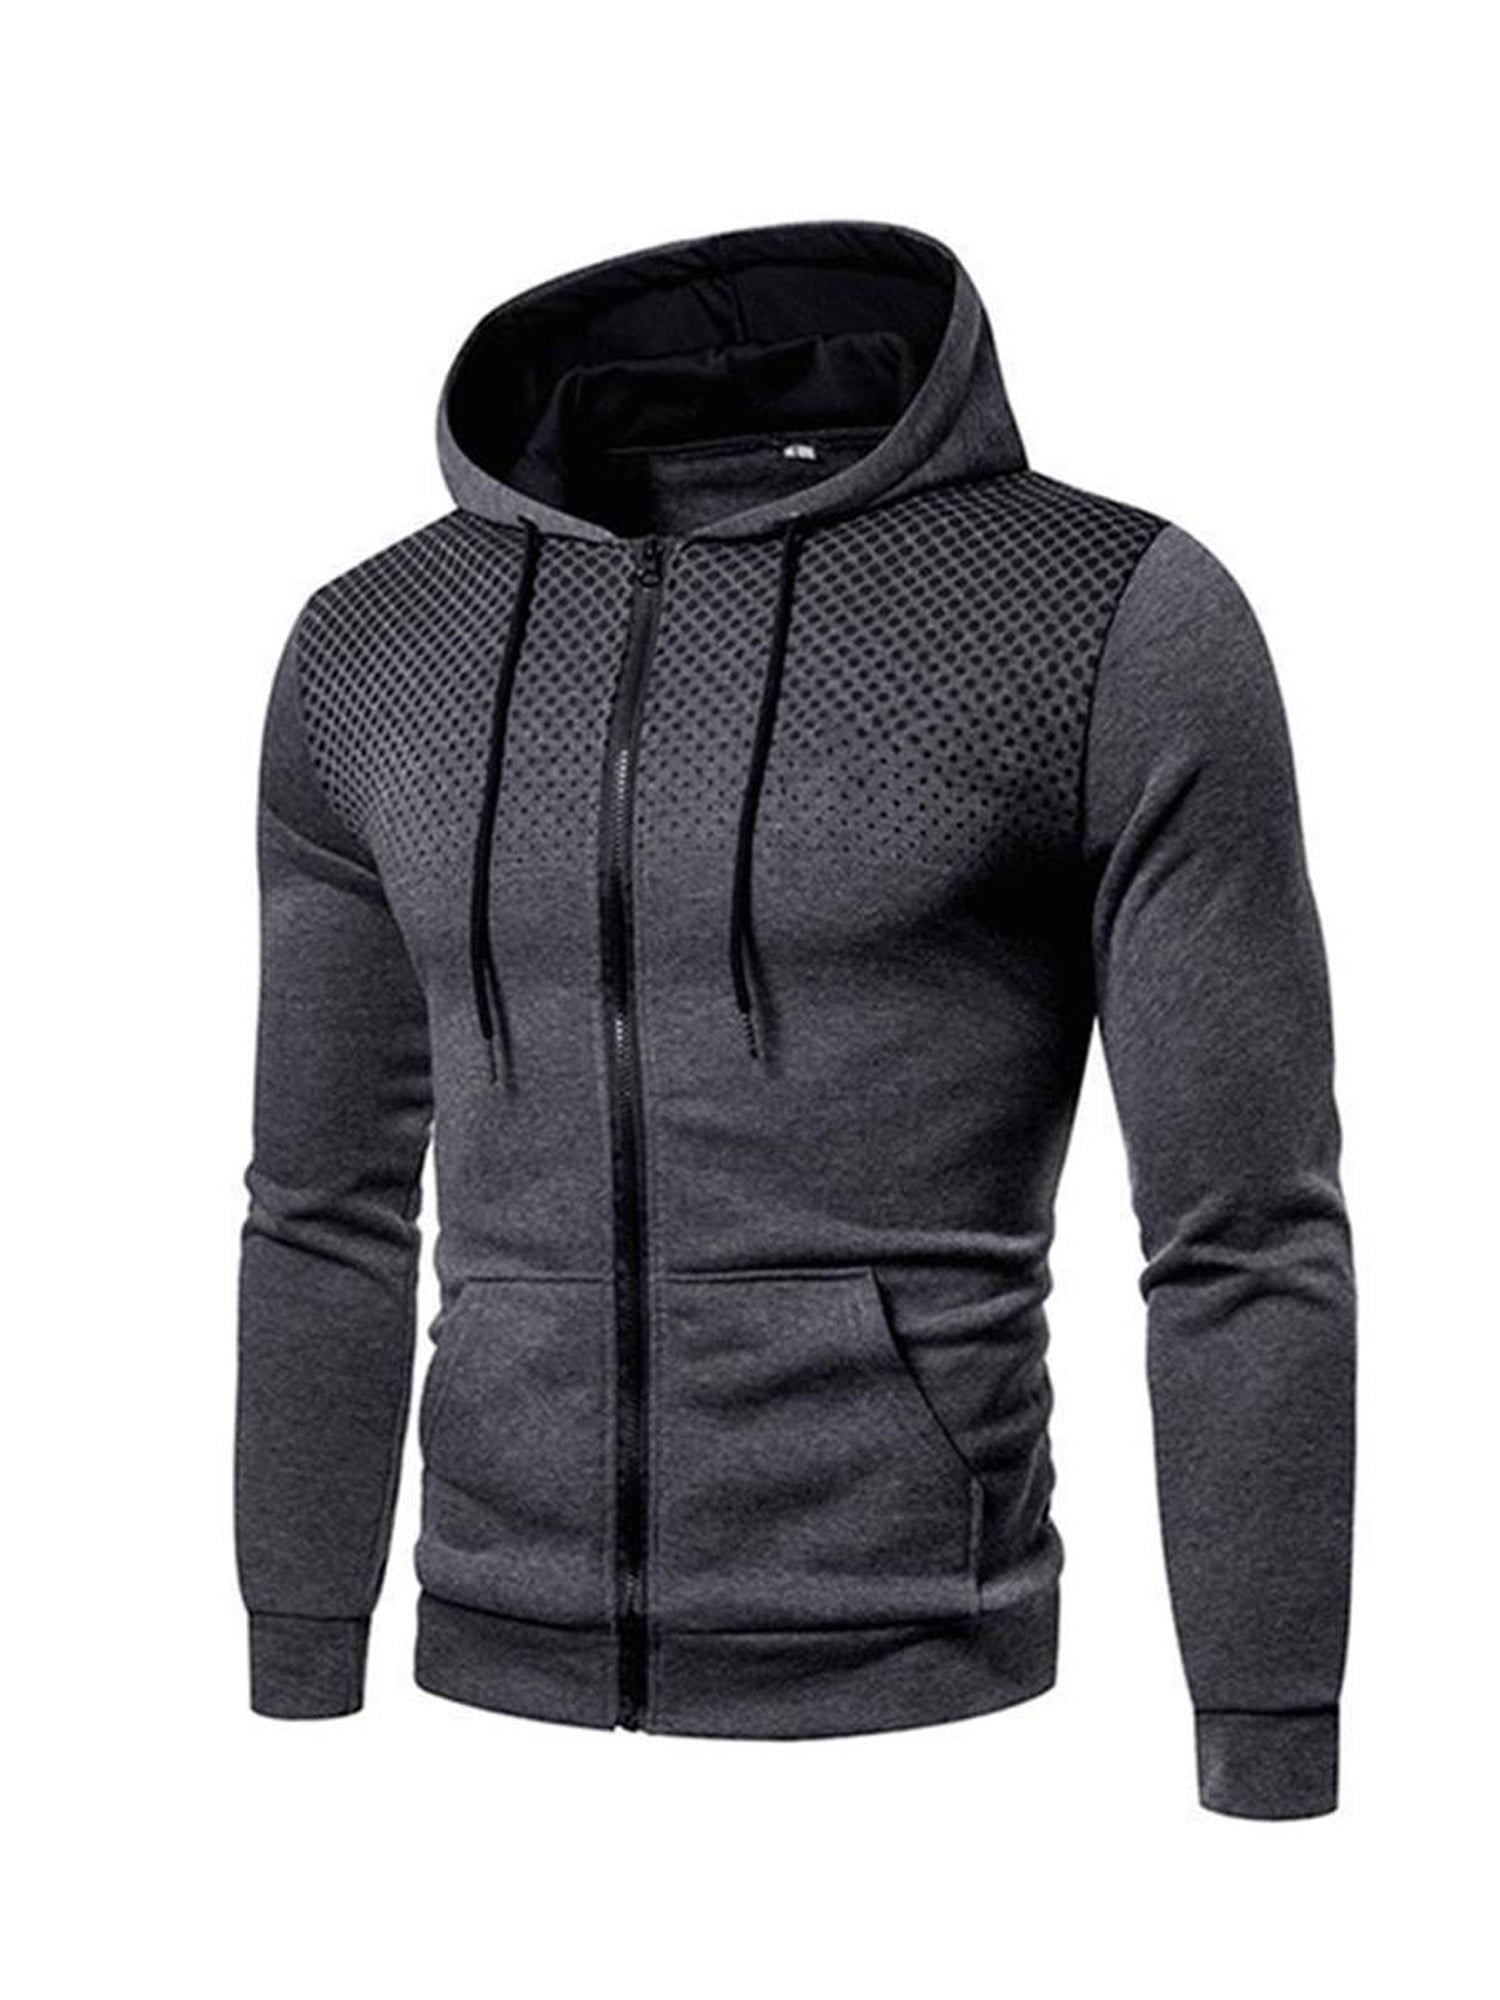 Men's Winter Loose Hoodies Sweatshirt Plush Jacket Hoodie Tops Outerwear